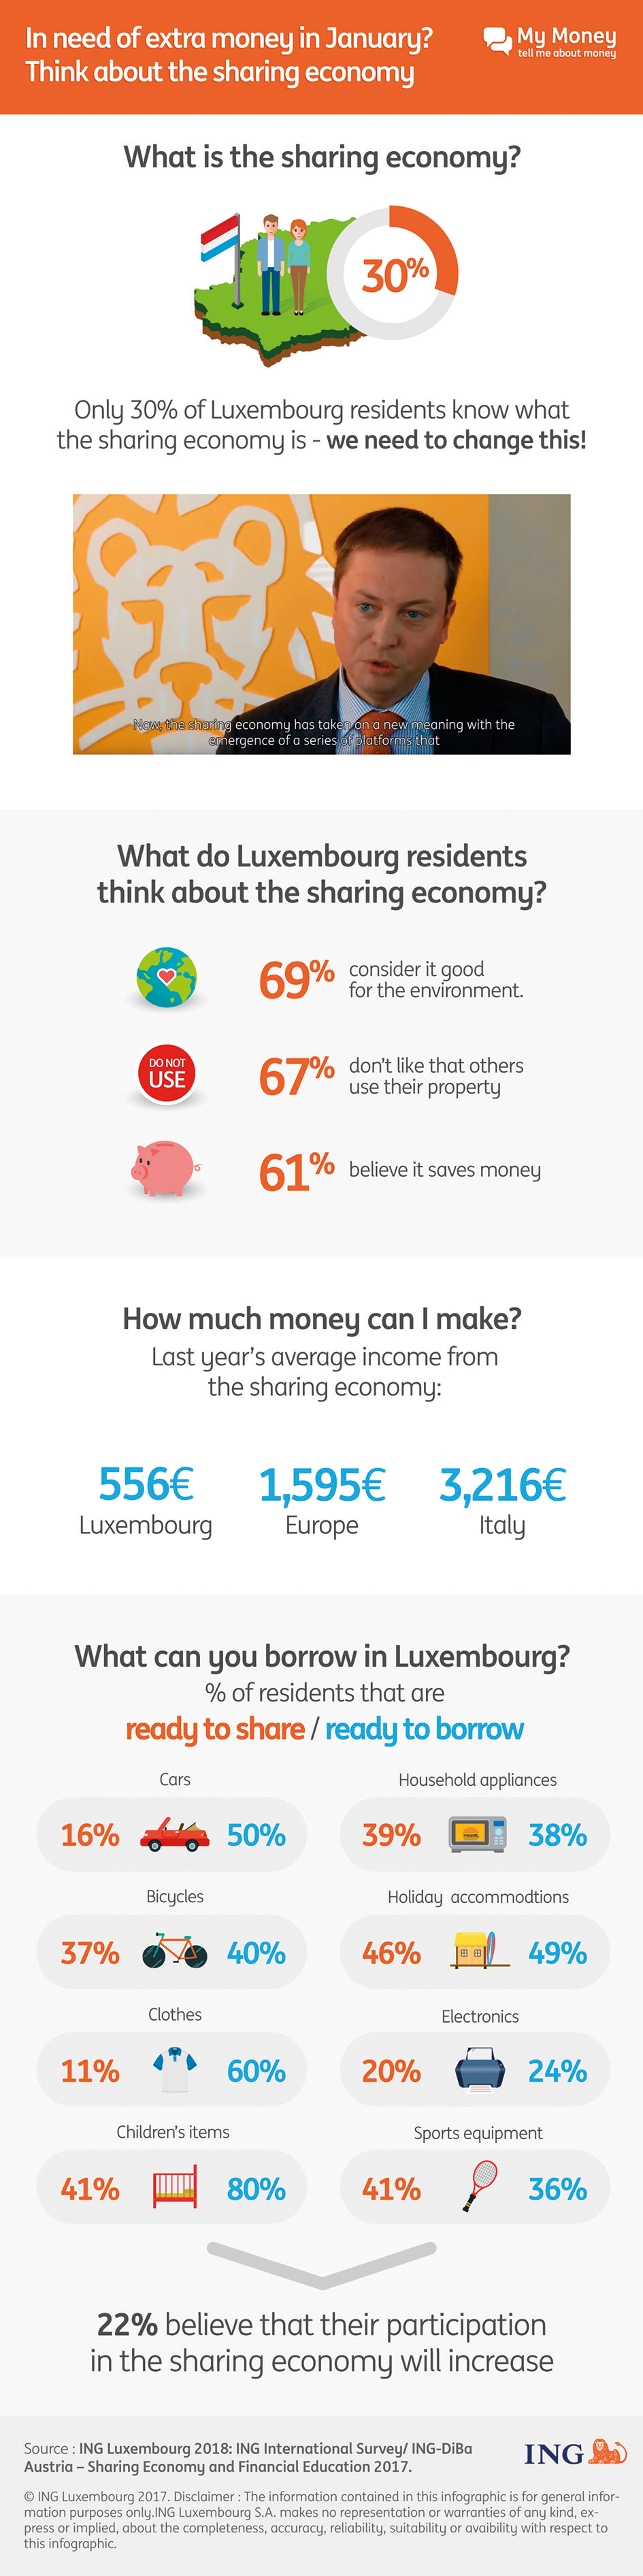 infographie sur l'économie de partage au Luxembourg